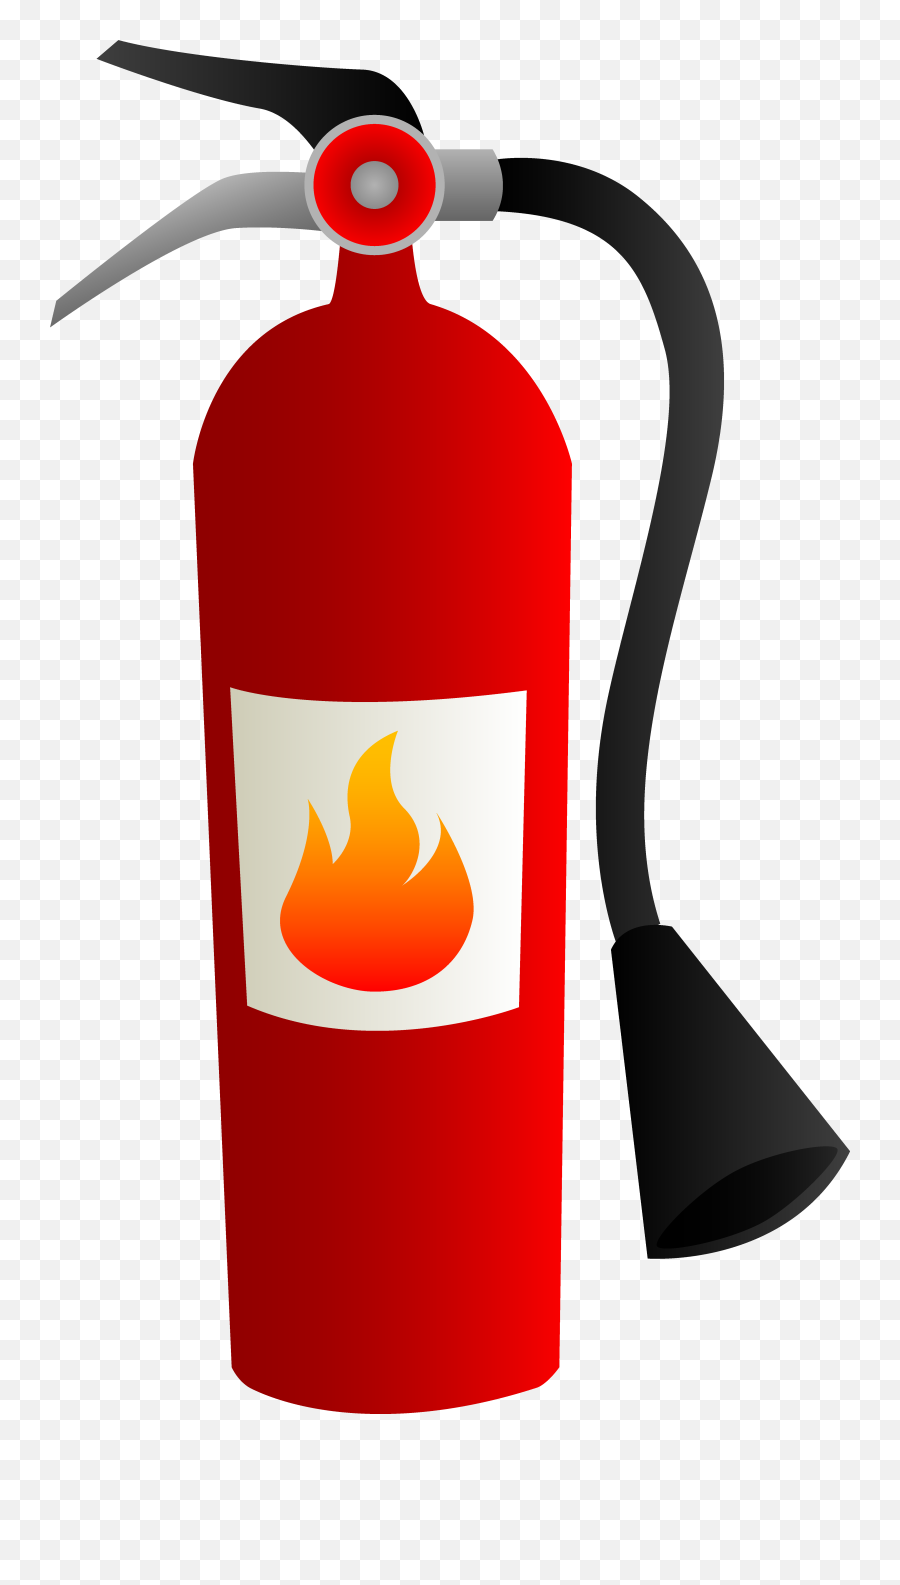 Fire Safety Clipart - Cartoon Clip Art Fire Extinguisher Emoji,Fire Extinguisher Emoji